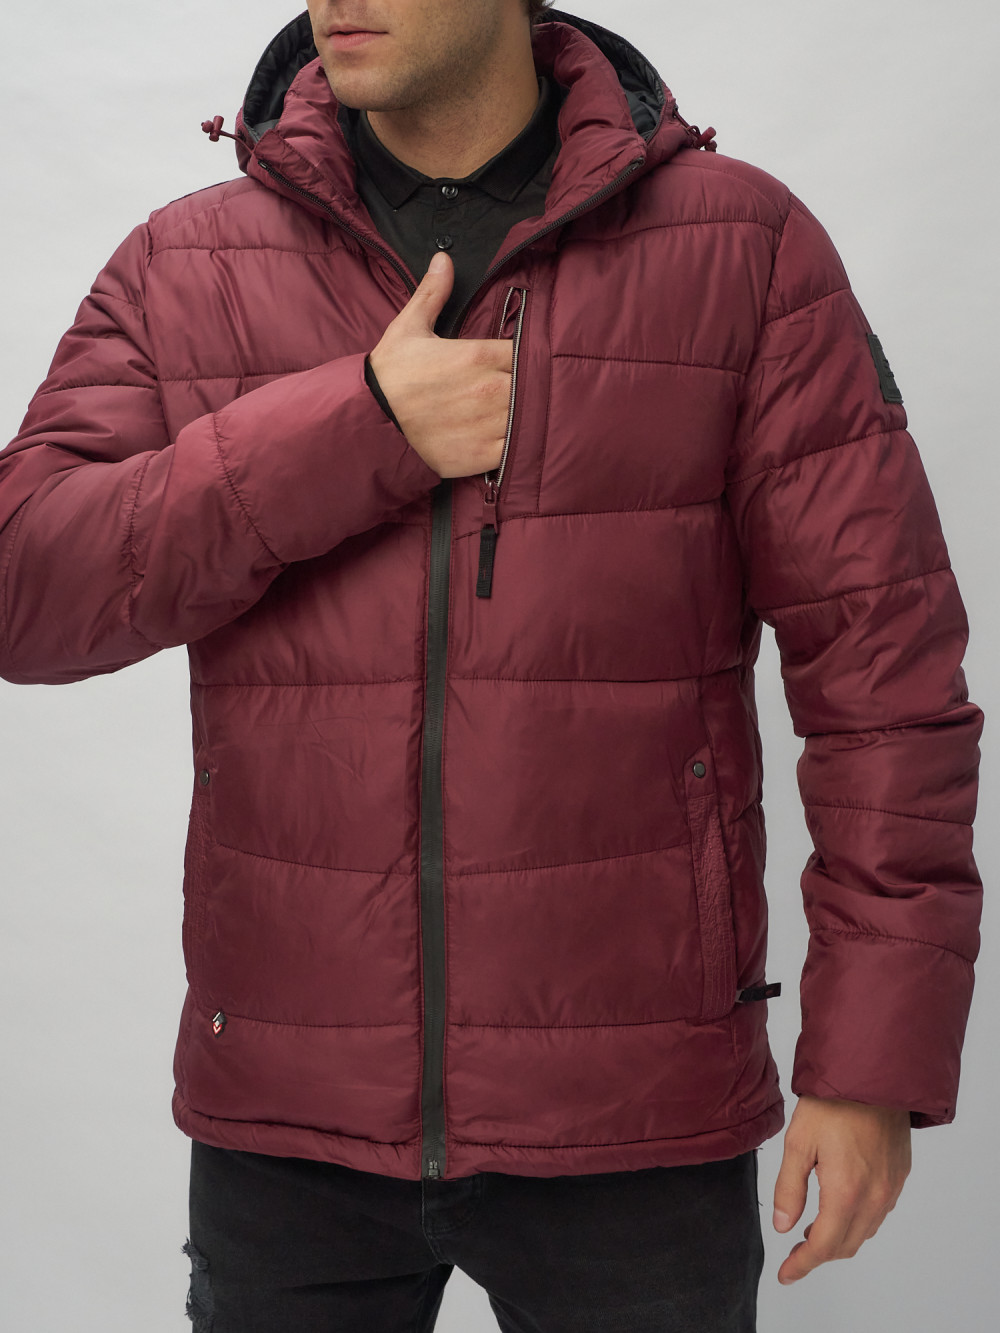 Купить куртку мужскую спортивную весеннюю оптом от производителя недорого в Москве 62186Bo 1